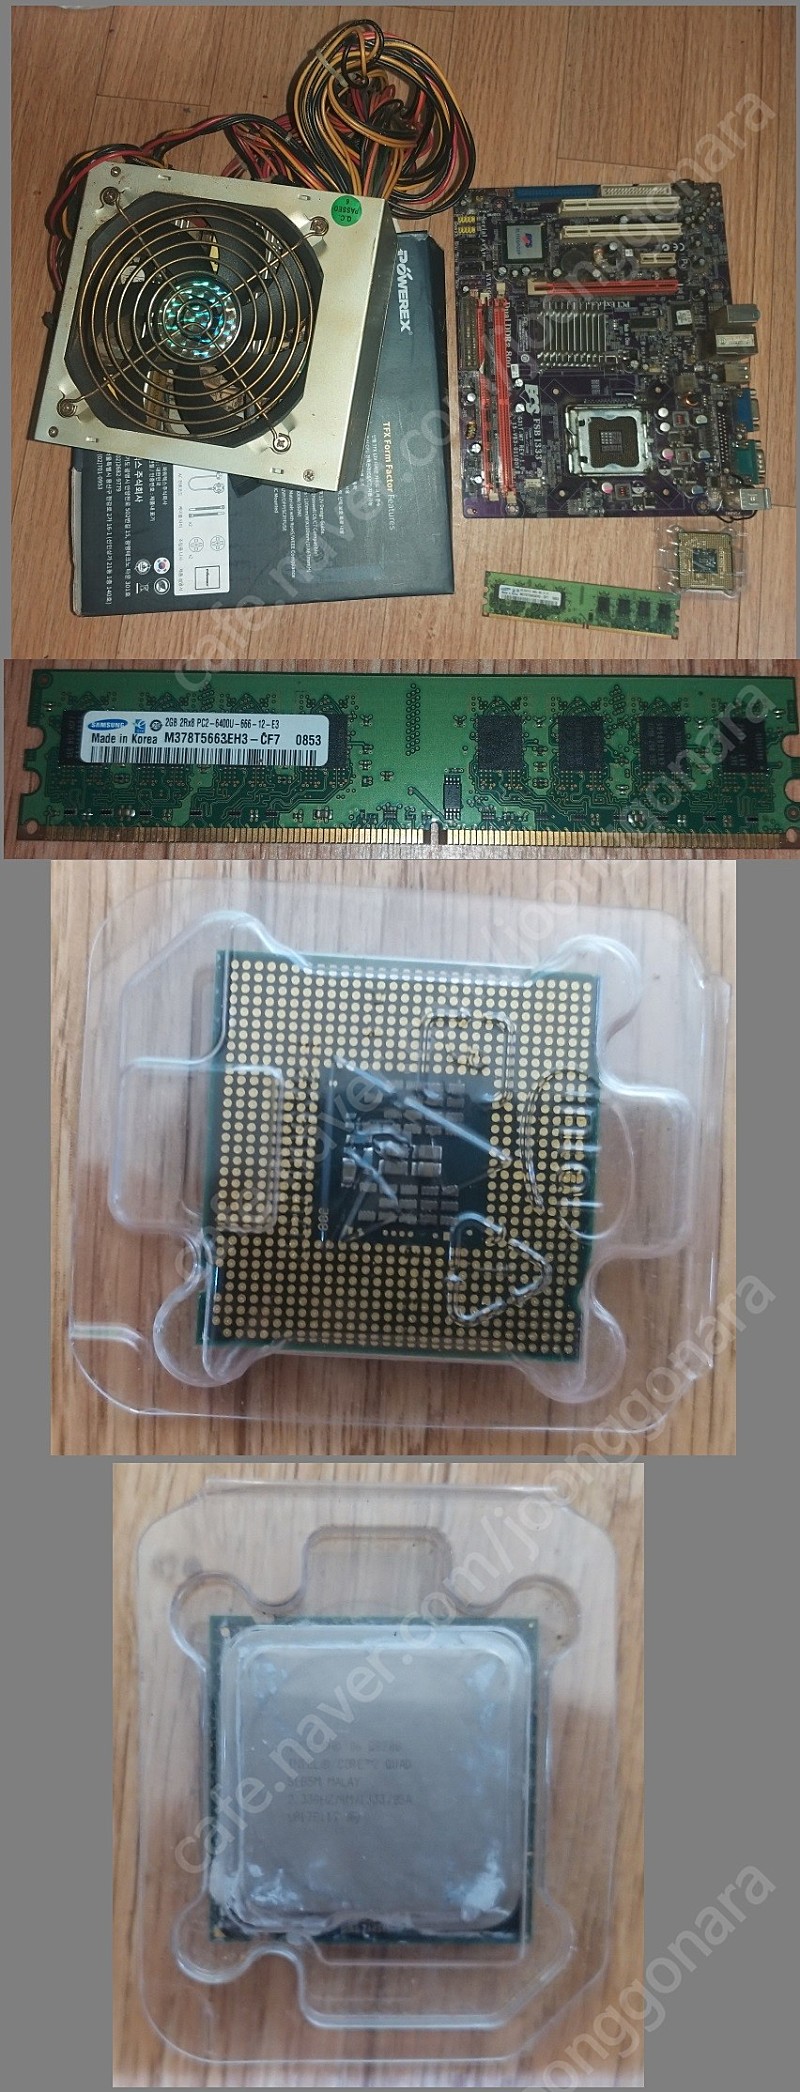 (대전직거래만, 세트 팝니다 3만5천) 쿼드코어 요크필드 Q8200+삼성 DDR2 2GB Ram*2개 (PC2-6400U)+500W 뻥파워+ECS-G31 마더보드